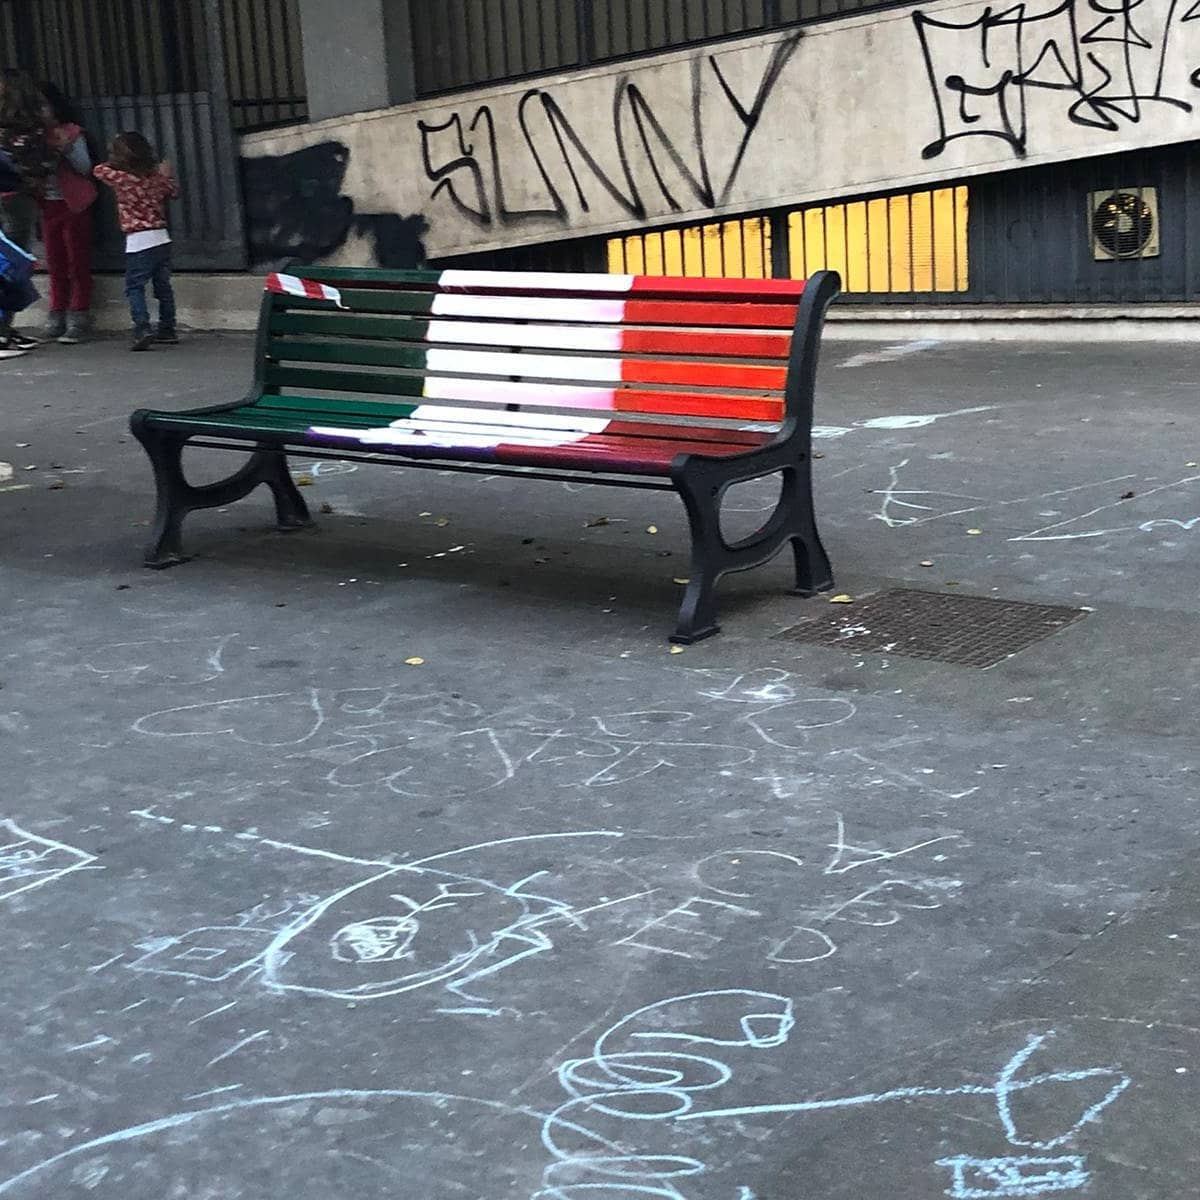 Roma, vandalizzate le panchine arcobaleno di Piazza Gimma: "Le ridipingeremo tutte" - Roma vandalizzate le panchine arcobaleno di Piazza Gimma - Gay.it